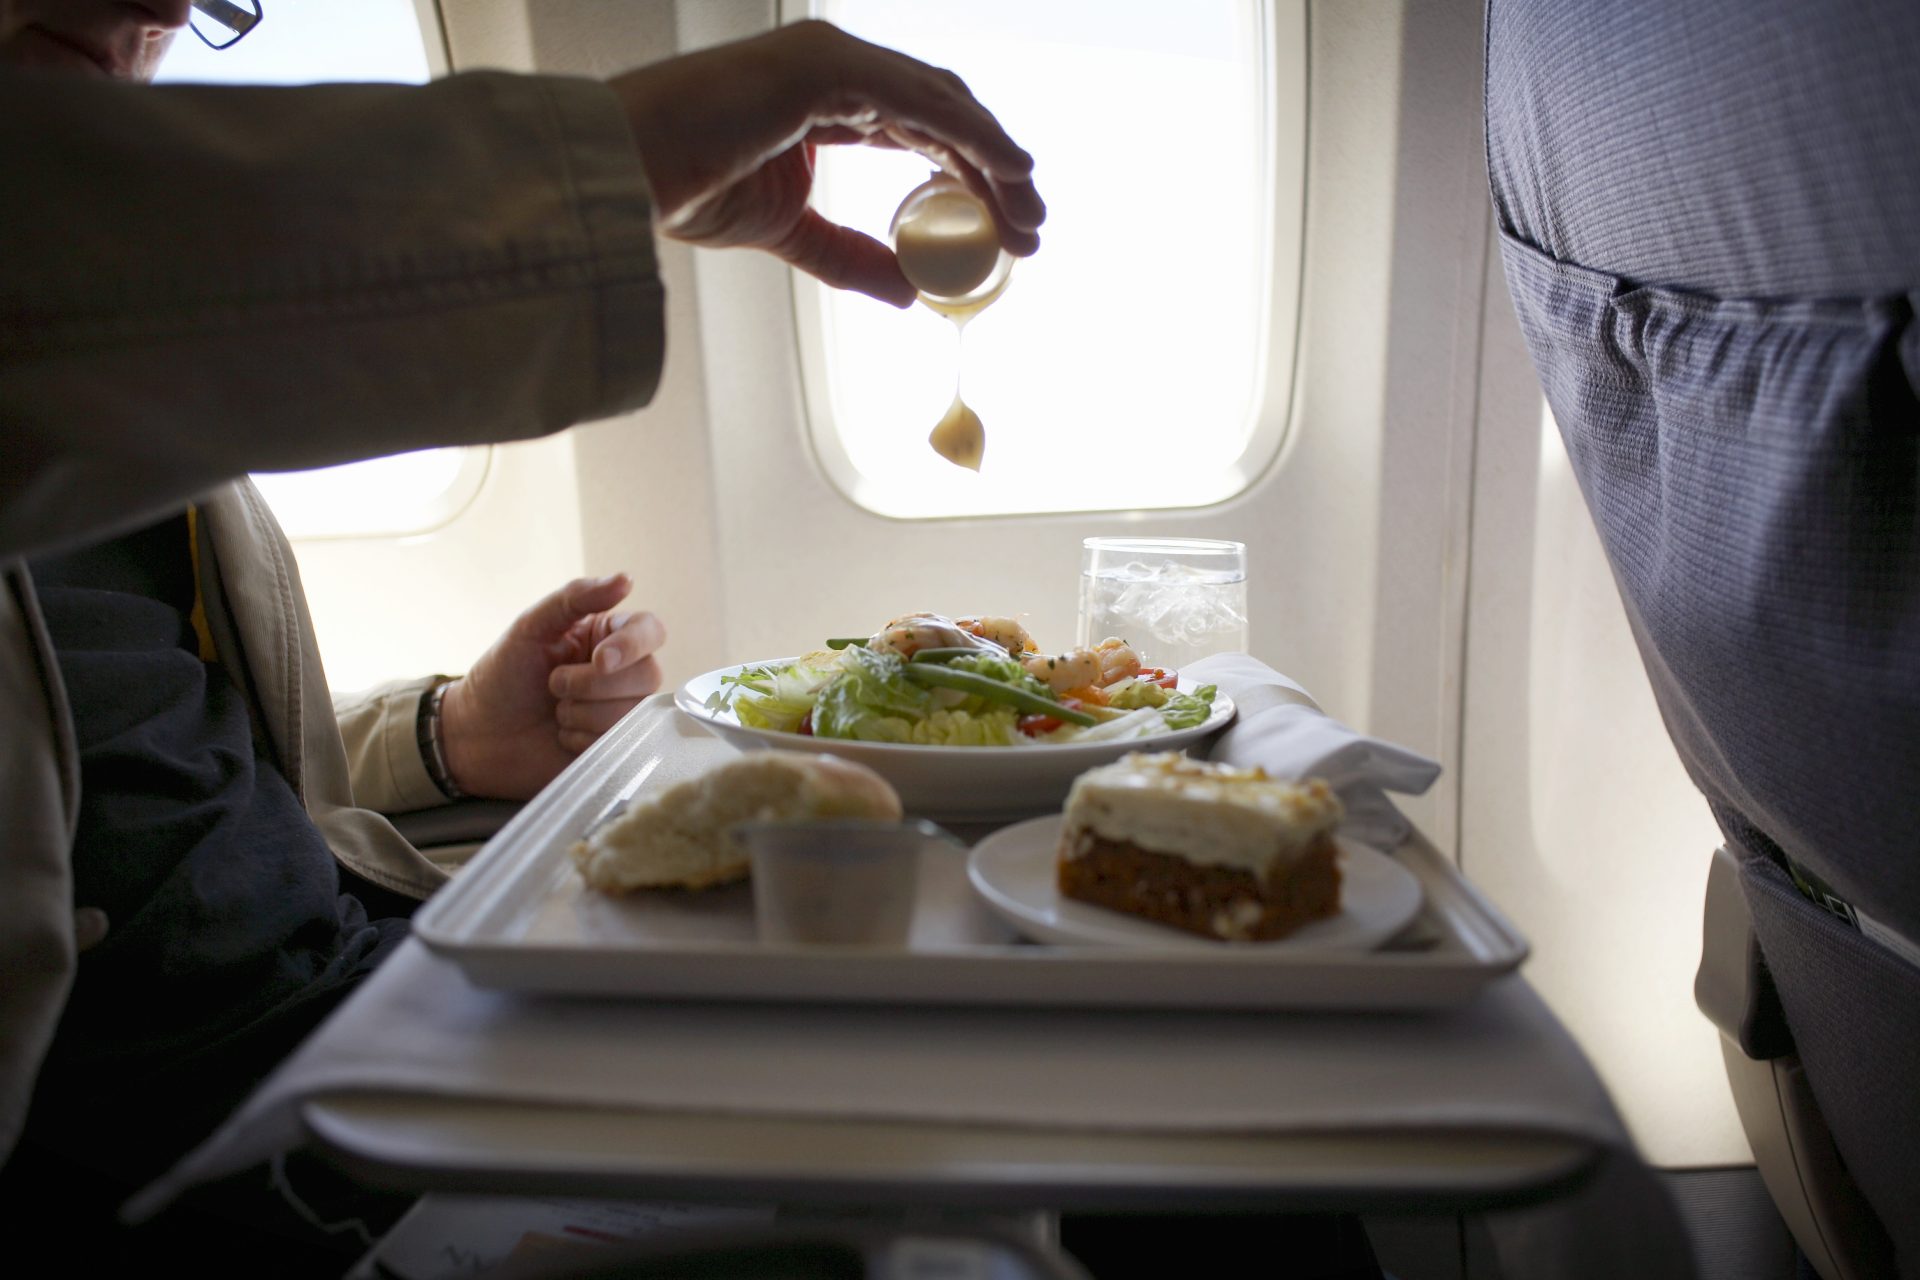 يقترح خبراء طعام آخرون على الطائرات تجنب تناول المعكرونة على الطائرات لأنها "لا تسخن جيدًا"